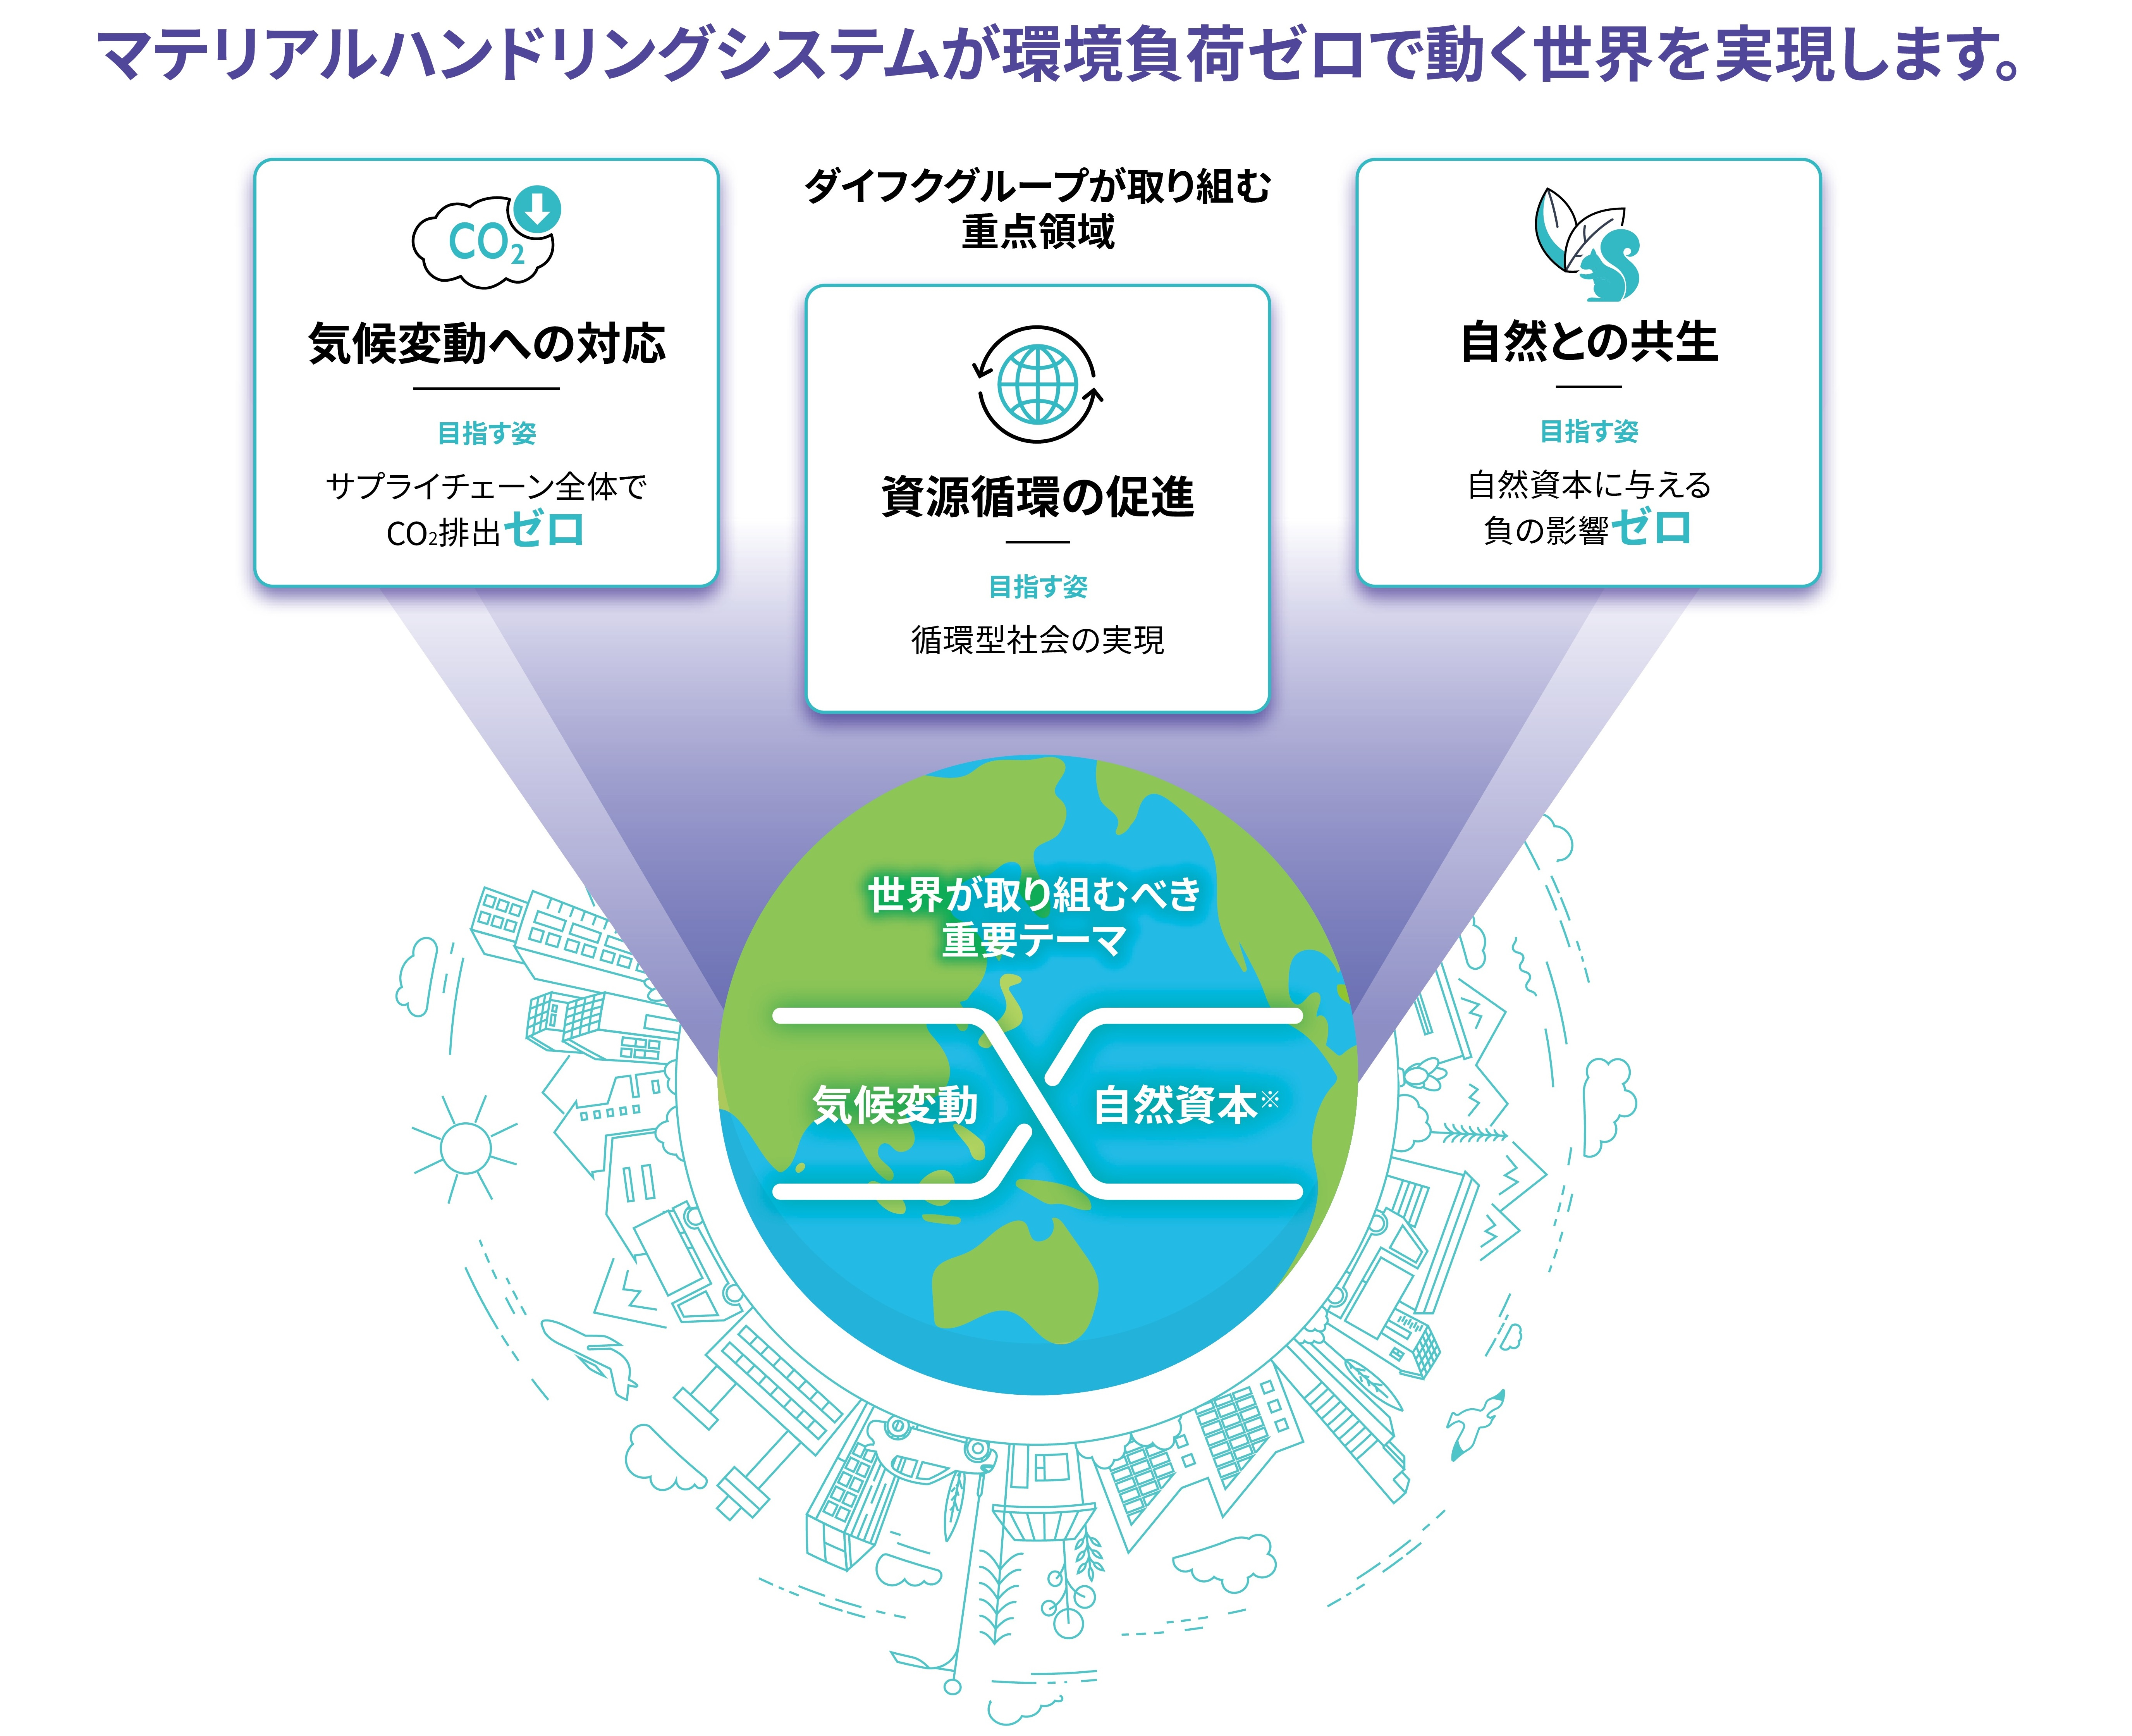 ダイフク環境ビジョン2050 One-Daifuku Zero マテリアルハンドリングシステムが環境負荷ゼロで動く世界を目指す